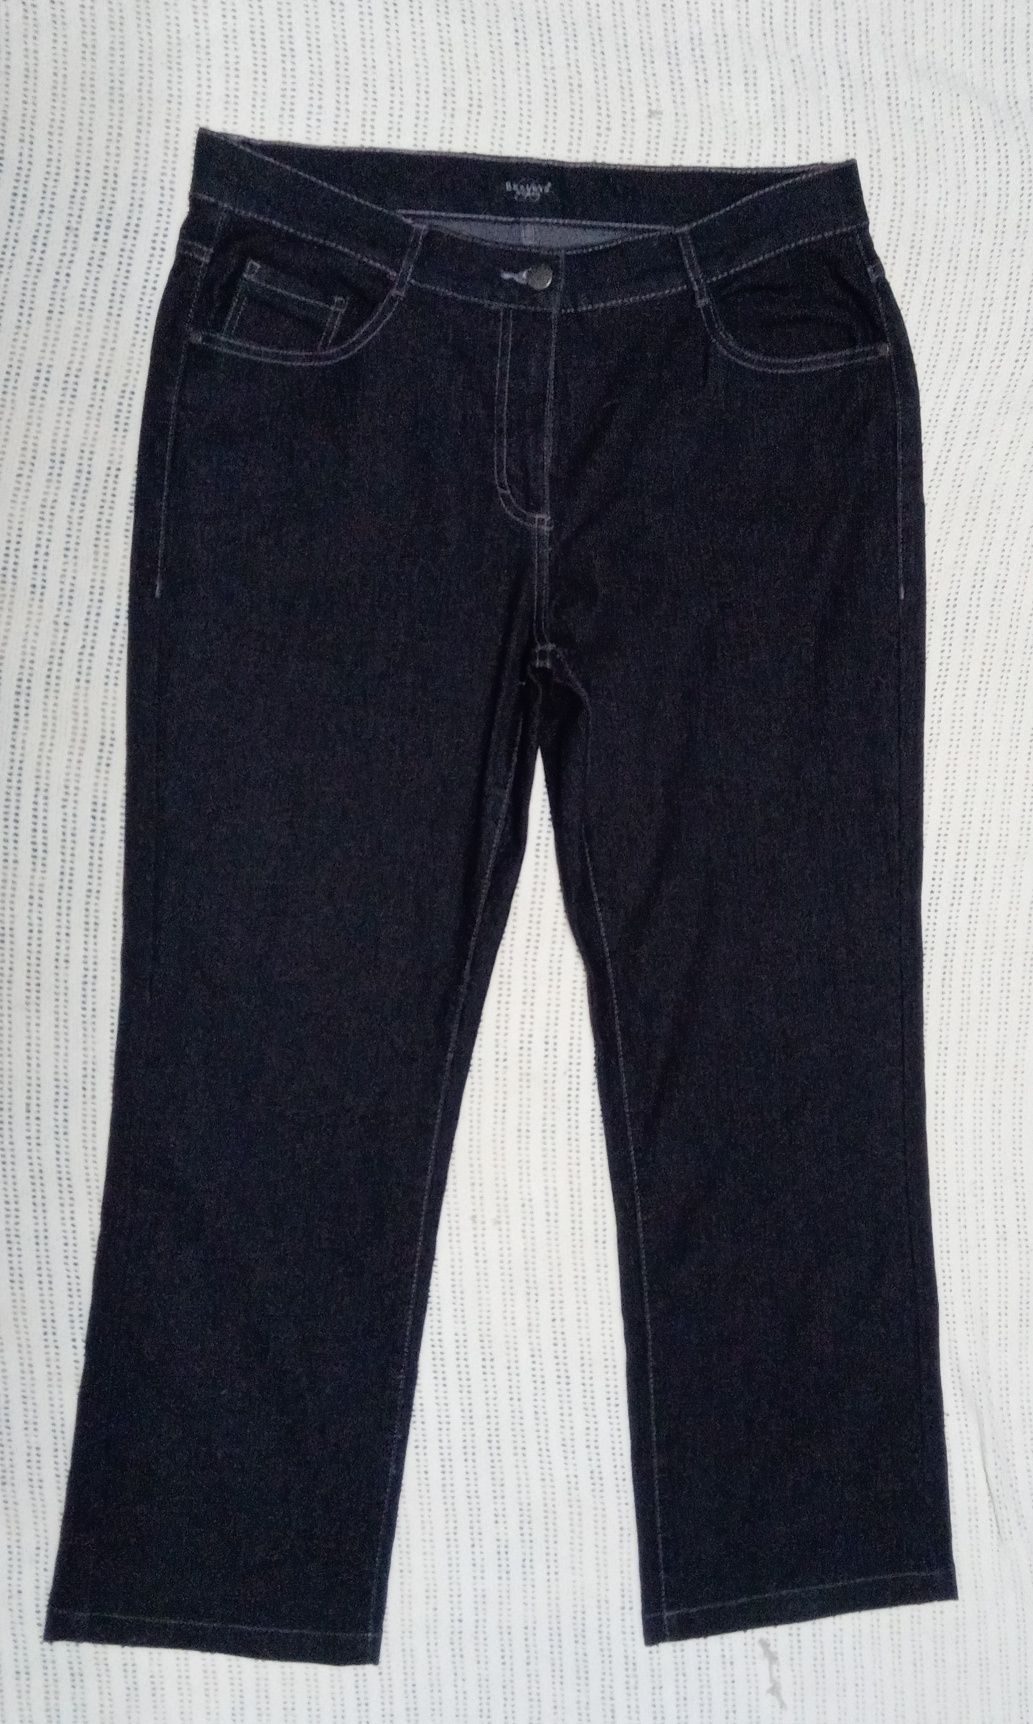 Женские  ровные джинсы-50-52размер